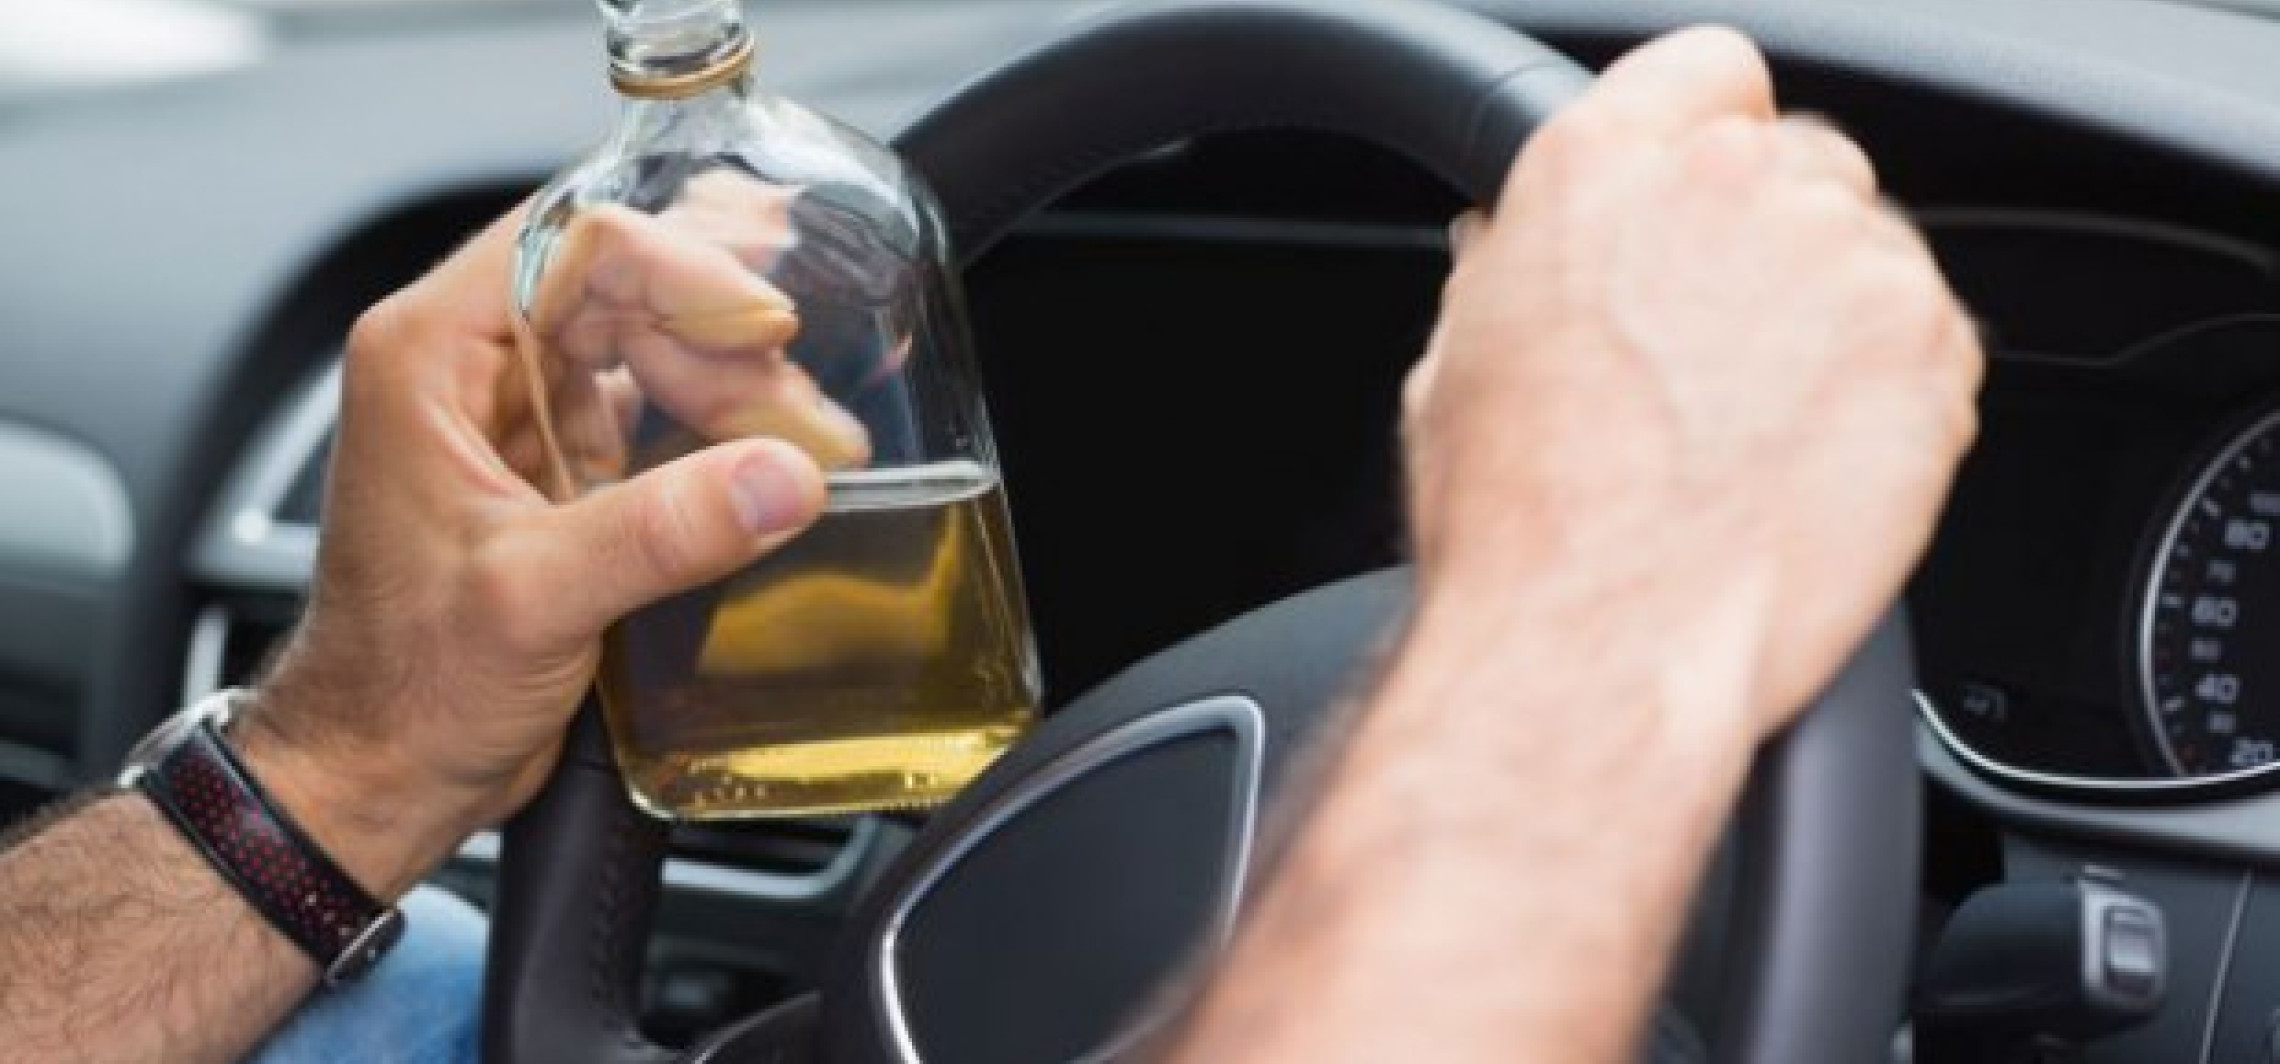 Strzelno - Zatrzymany pijany kierowca z dożywotnim zakazem